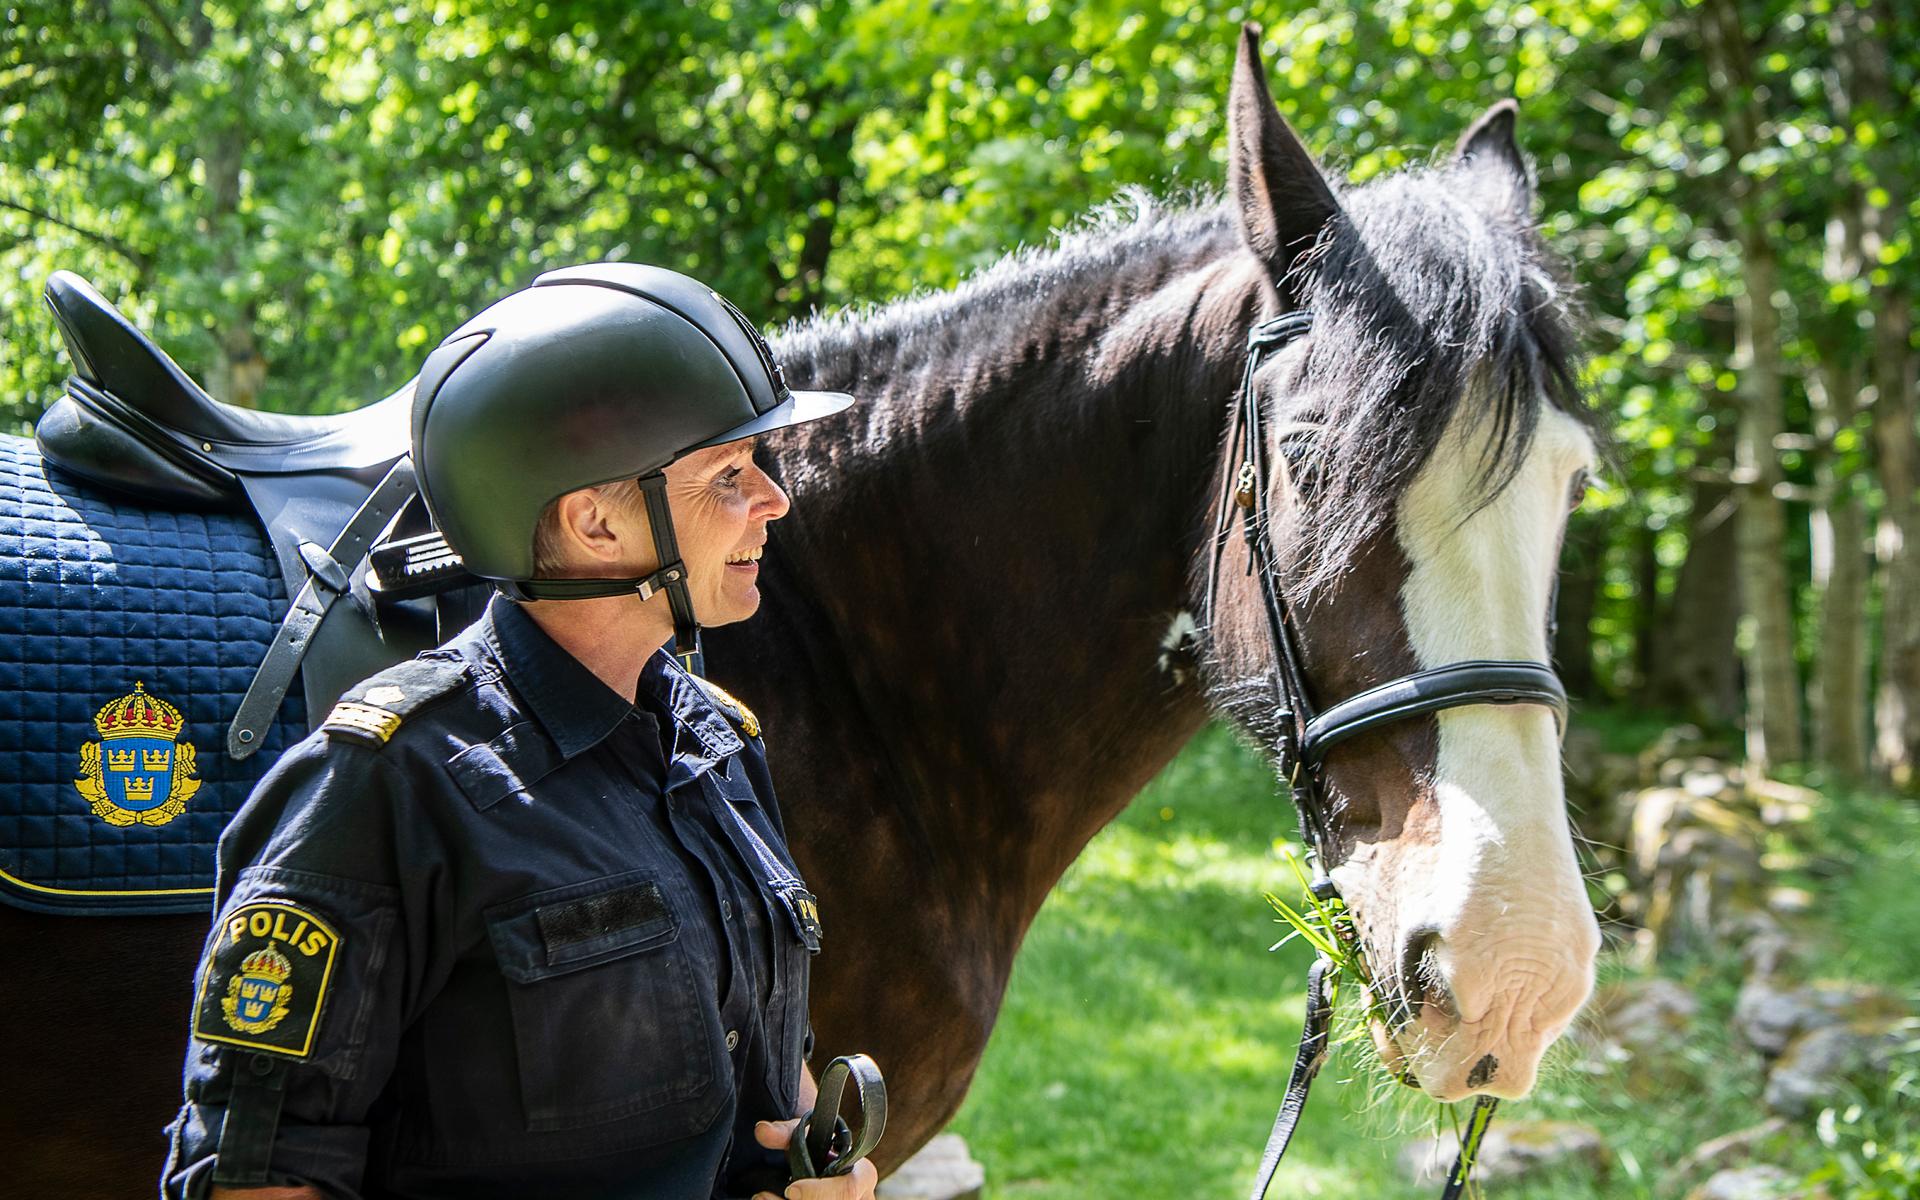 15 juni. Viola var i många år Sveriges största polishäst, och tillsammans Pia Goksöyr tjänstgjorde hon flitigt runt om i landet. Kort efter att bilden togs, skadade sig Viola så illa att hon fick tas bort.